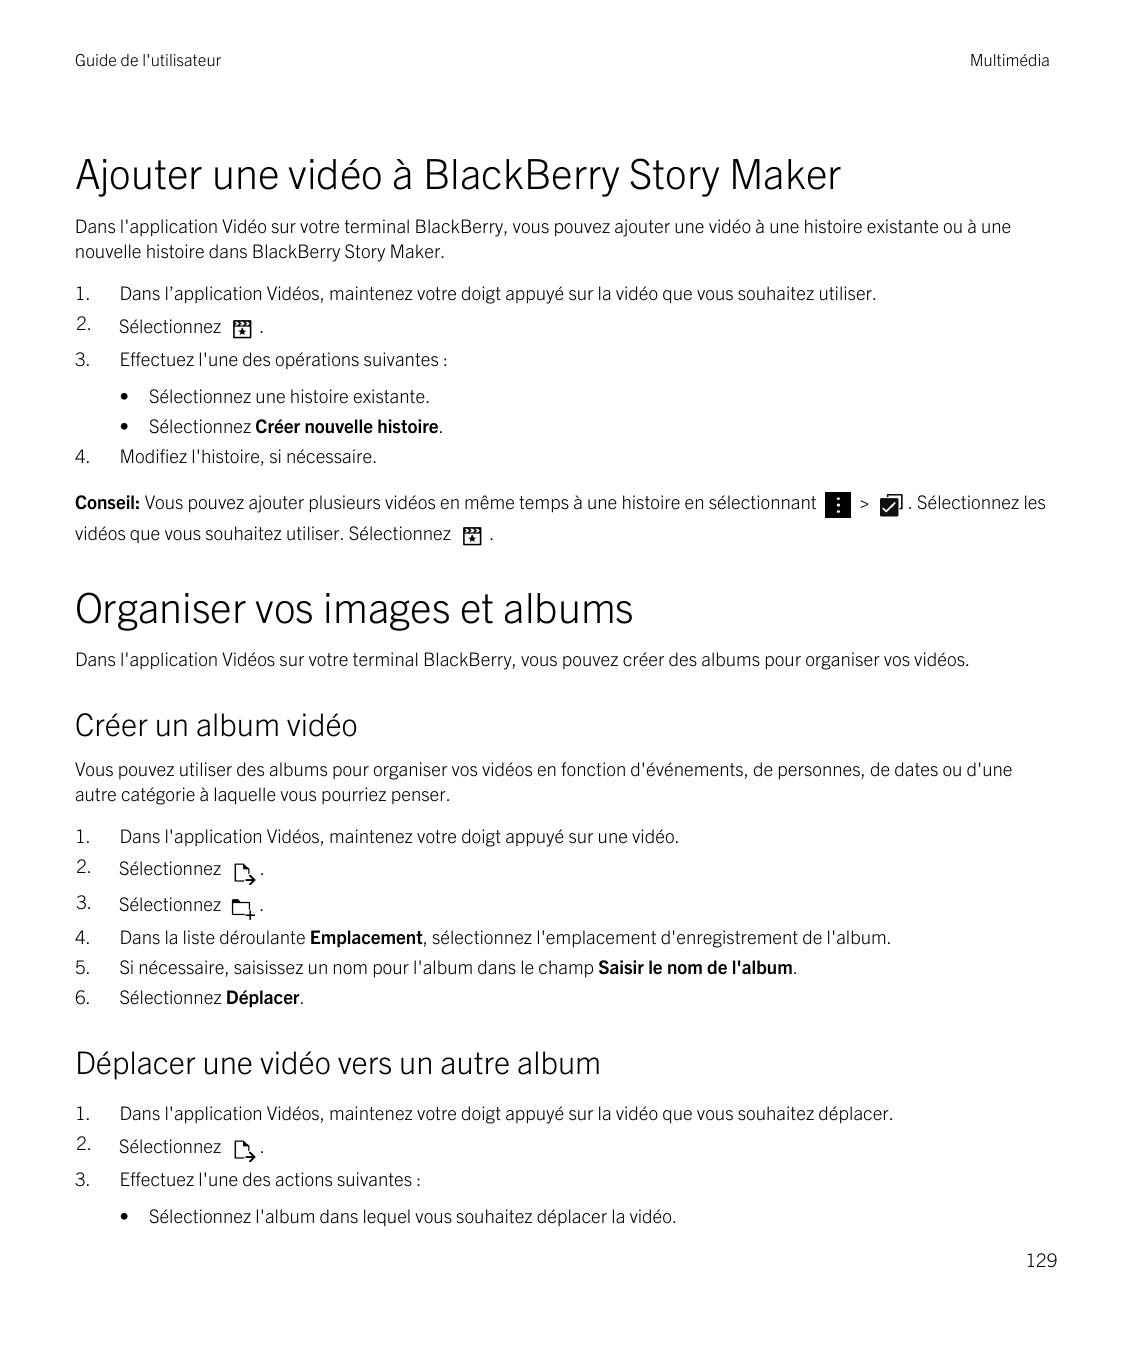 Guide de l'utilisateurMultimédiaAjouter une vidéo à BlackBerry Story MakerDans l'application Vidéo sur votre terminal BlackBerry